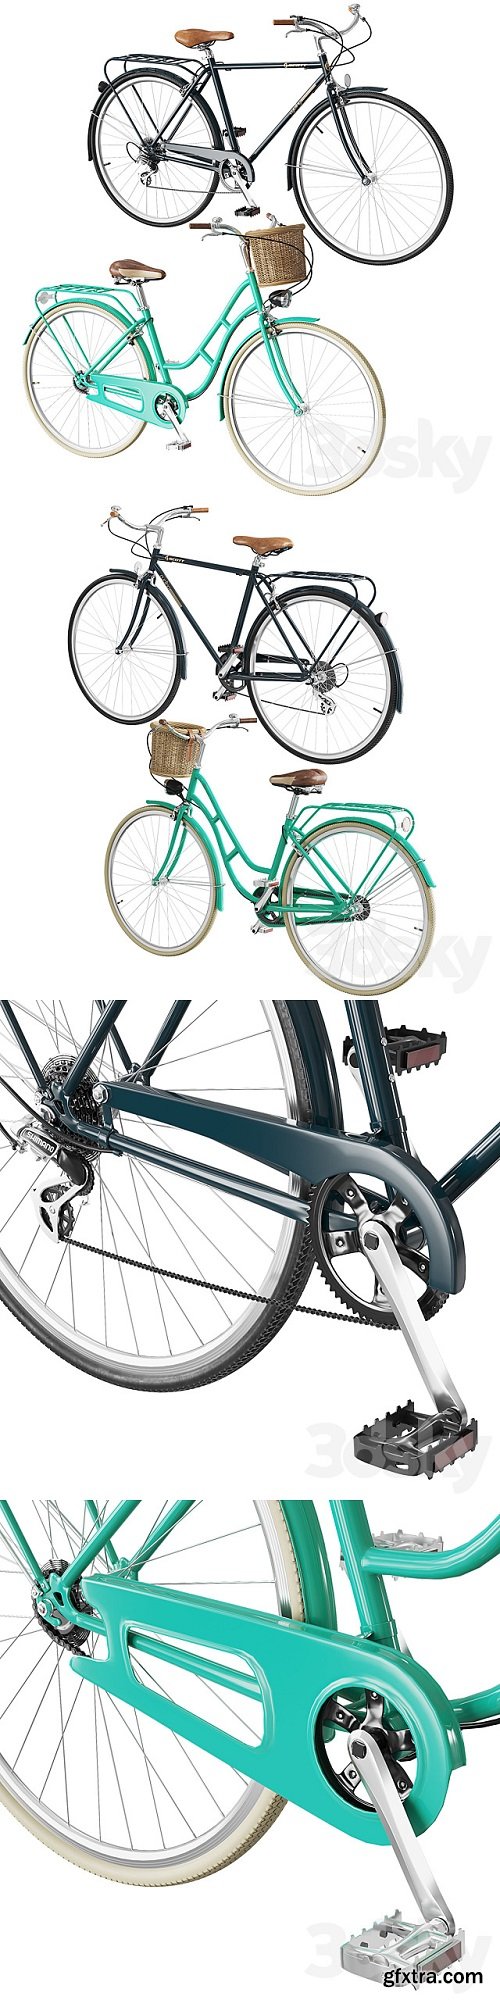 Retro bicycles